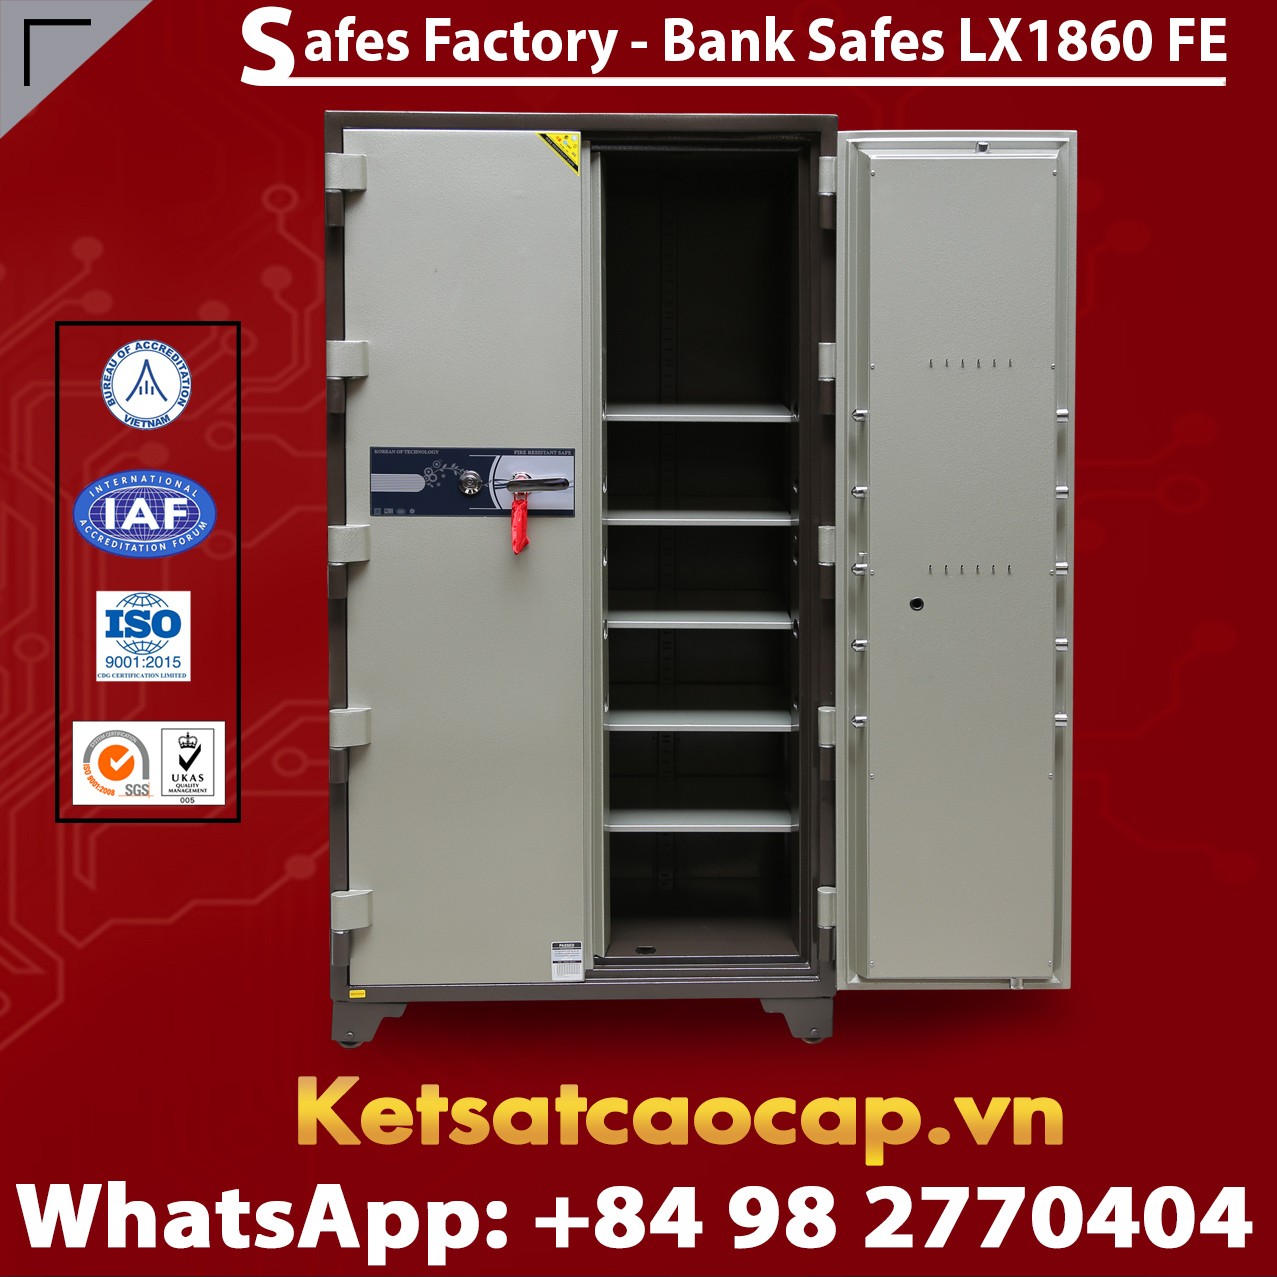 Bank Safes LX 1860 FE Two Door Fingerprint Electronic Locking System